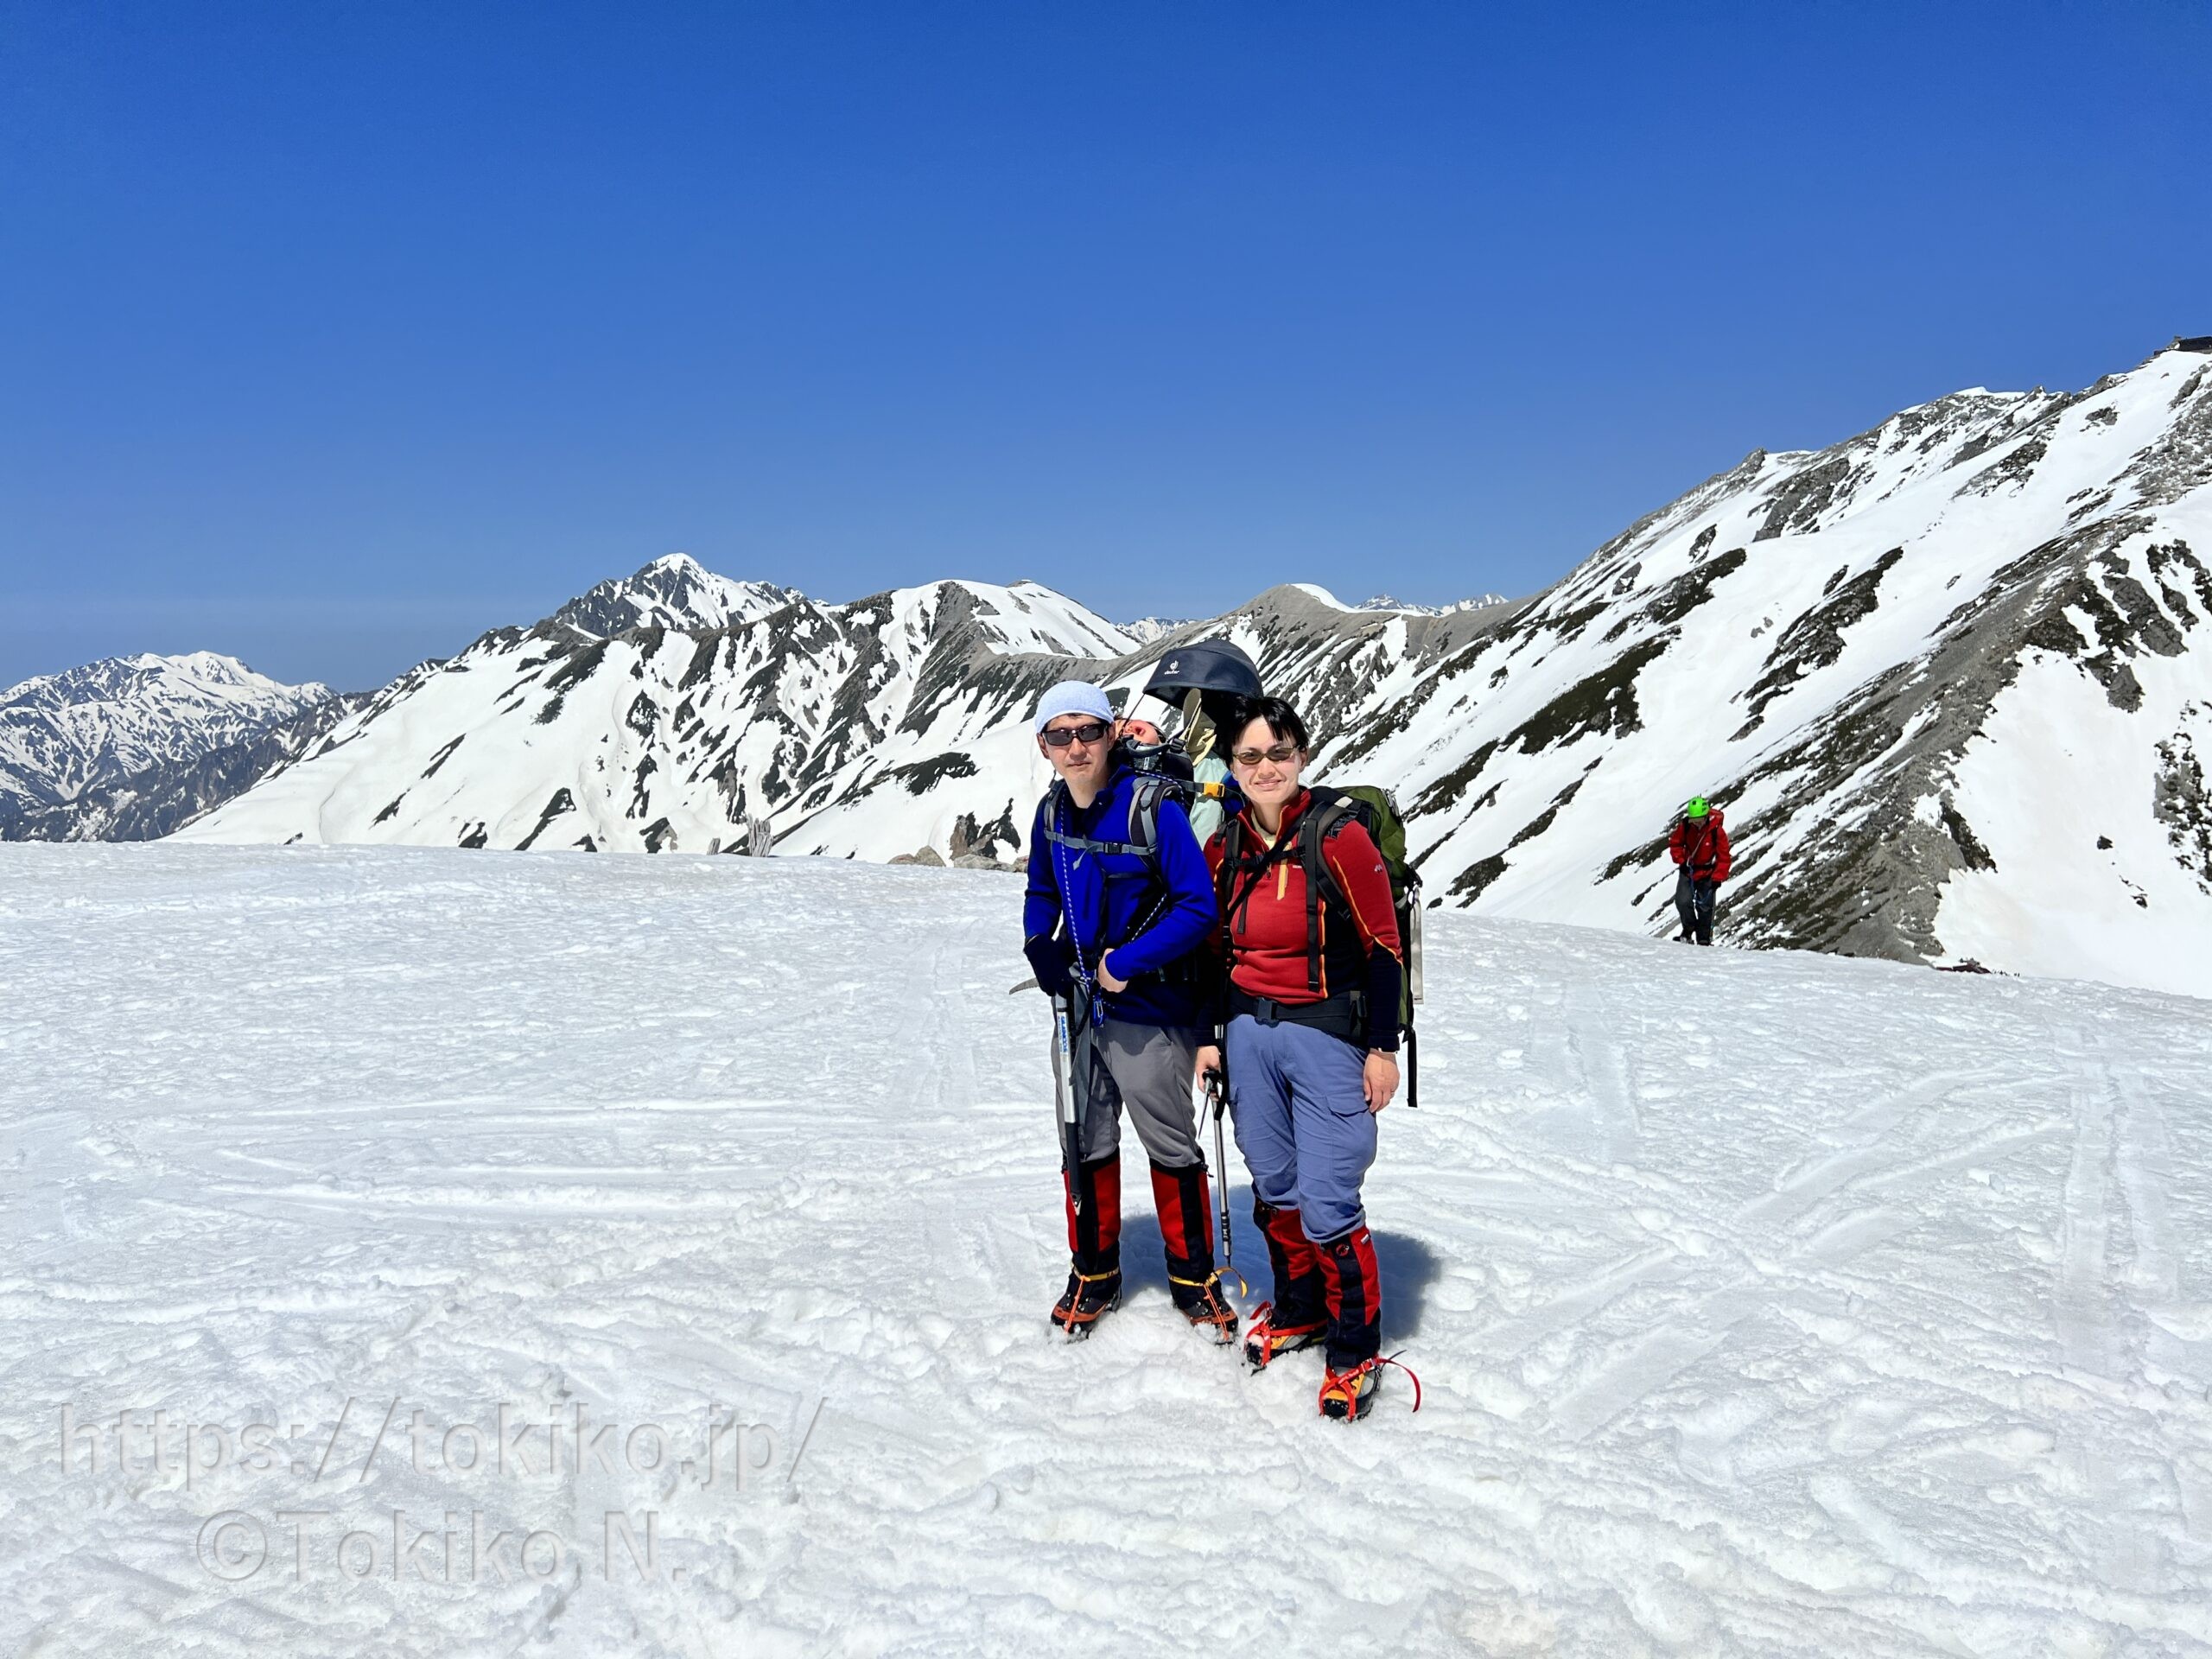 残雪期の立山連峰と剣岳